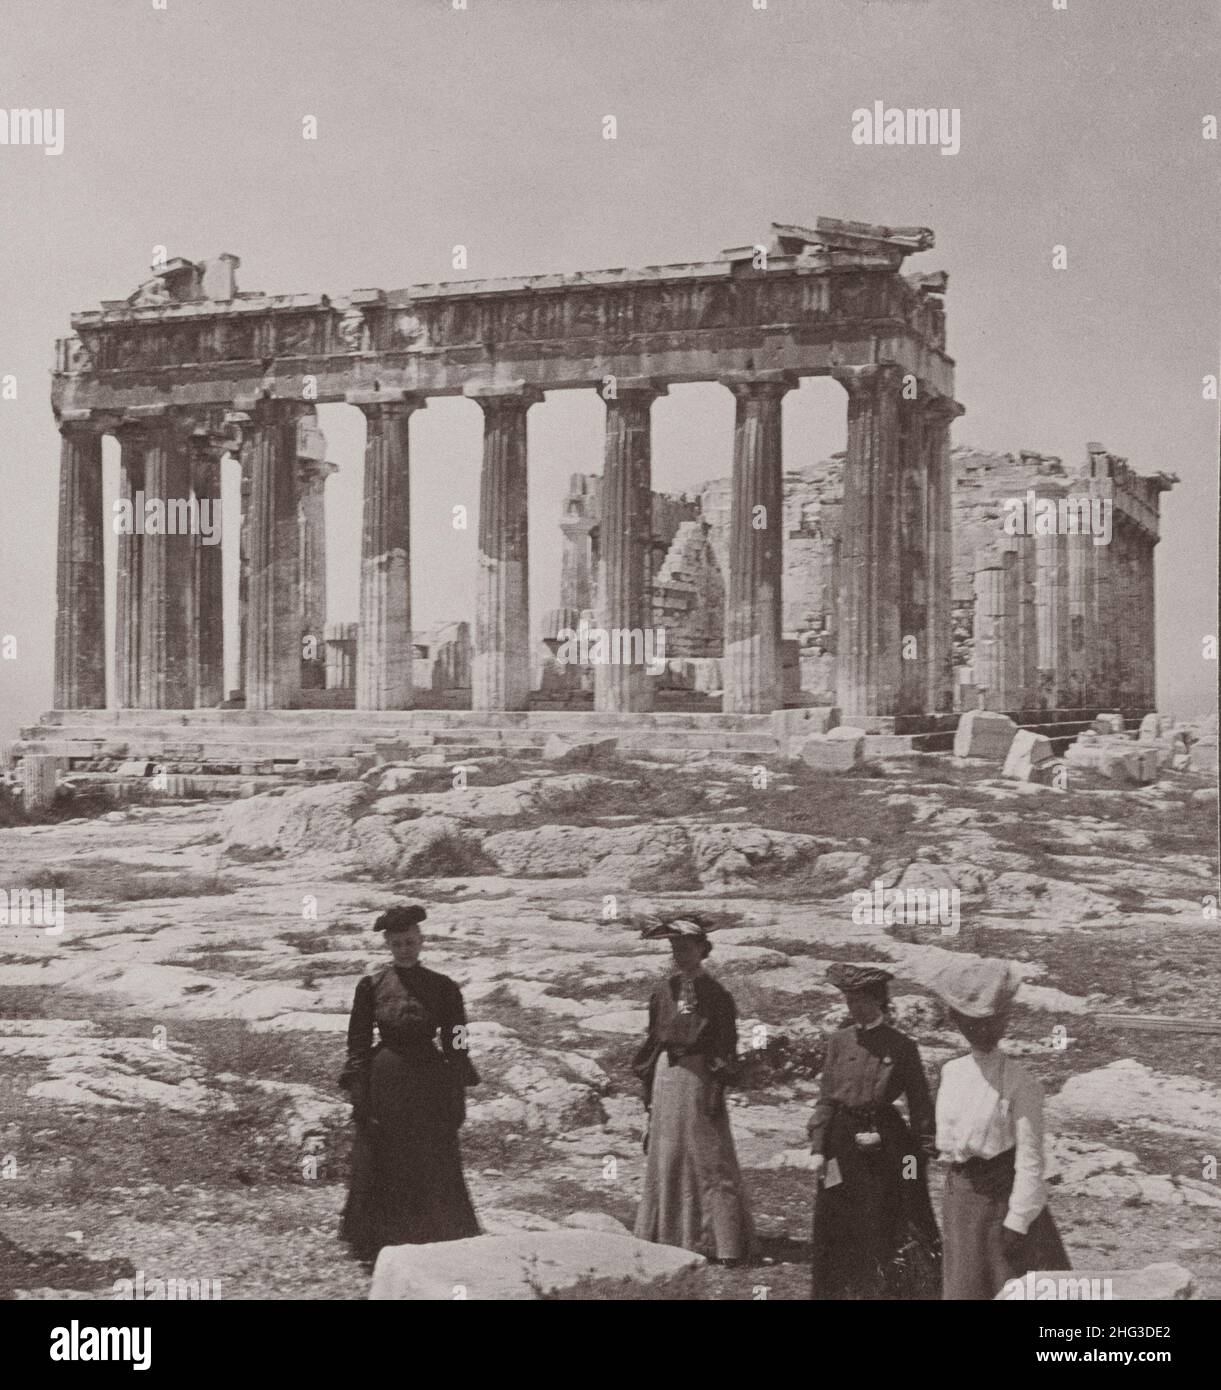 Vintage-Foto des berühmtesten klassischen Tempels der Welt, dem Parthenon in Athen, Griechenland. Das Foto von 1907 zeigt eine Gruppe von Frauen, die mit dem stehen Stockfoto